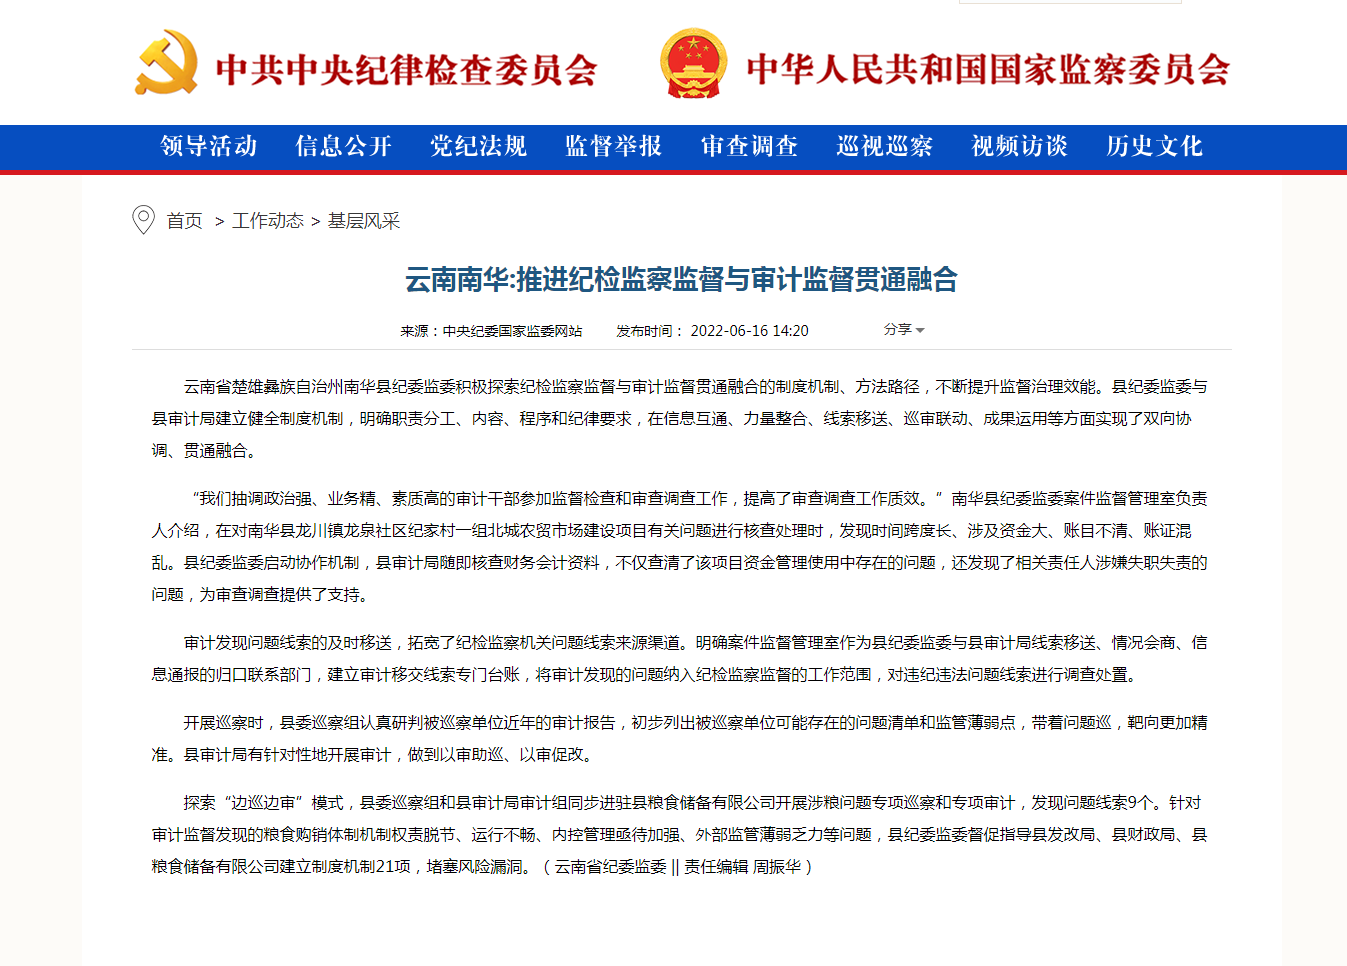 云南南华:推进纪检监察监督与审计监督贯通融合